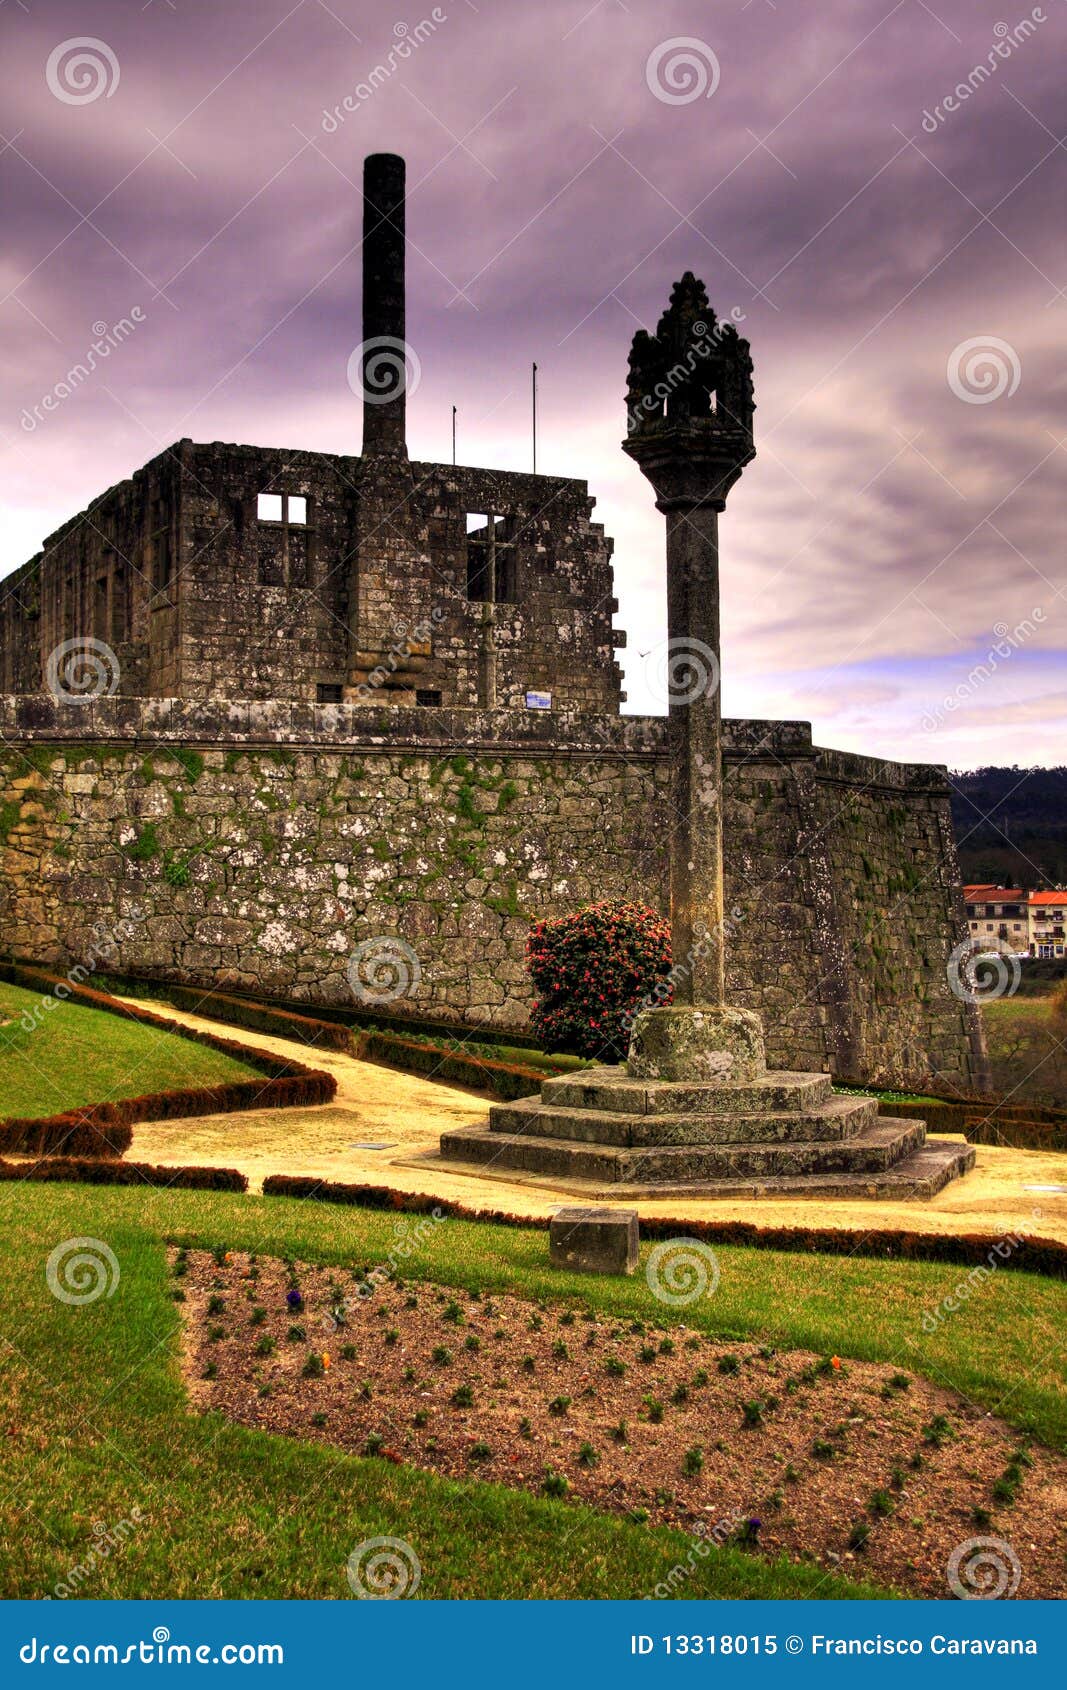 barcelos castle